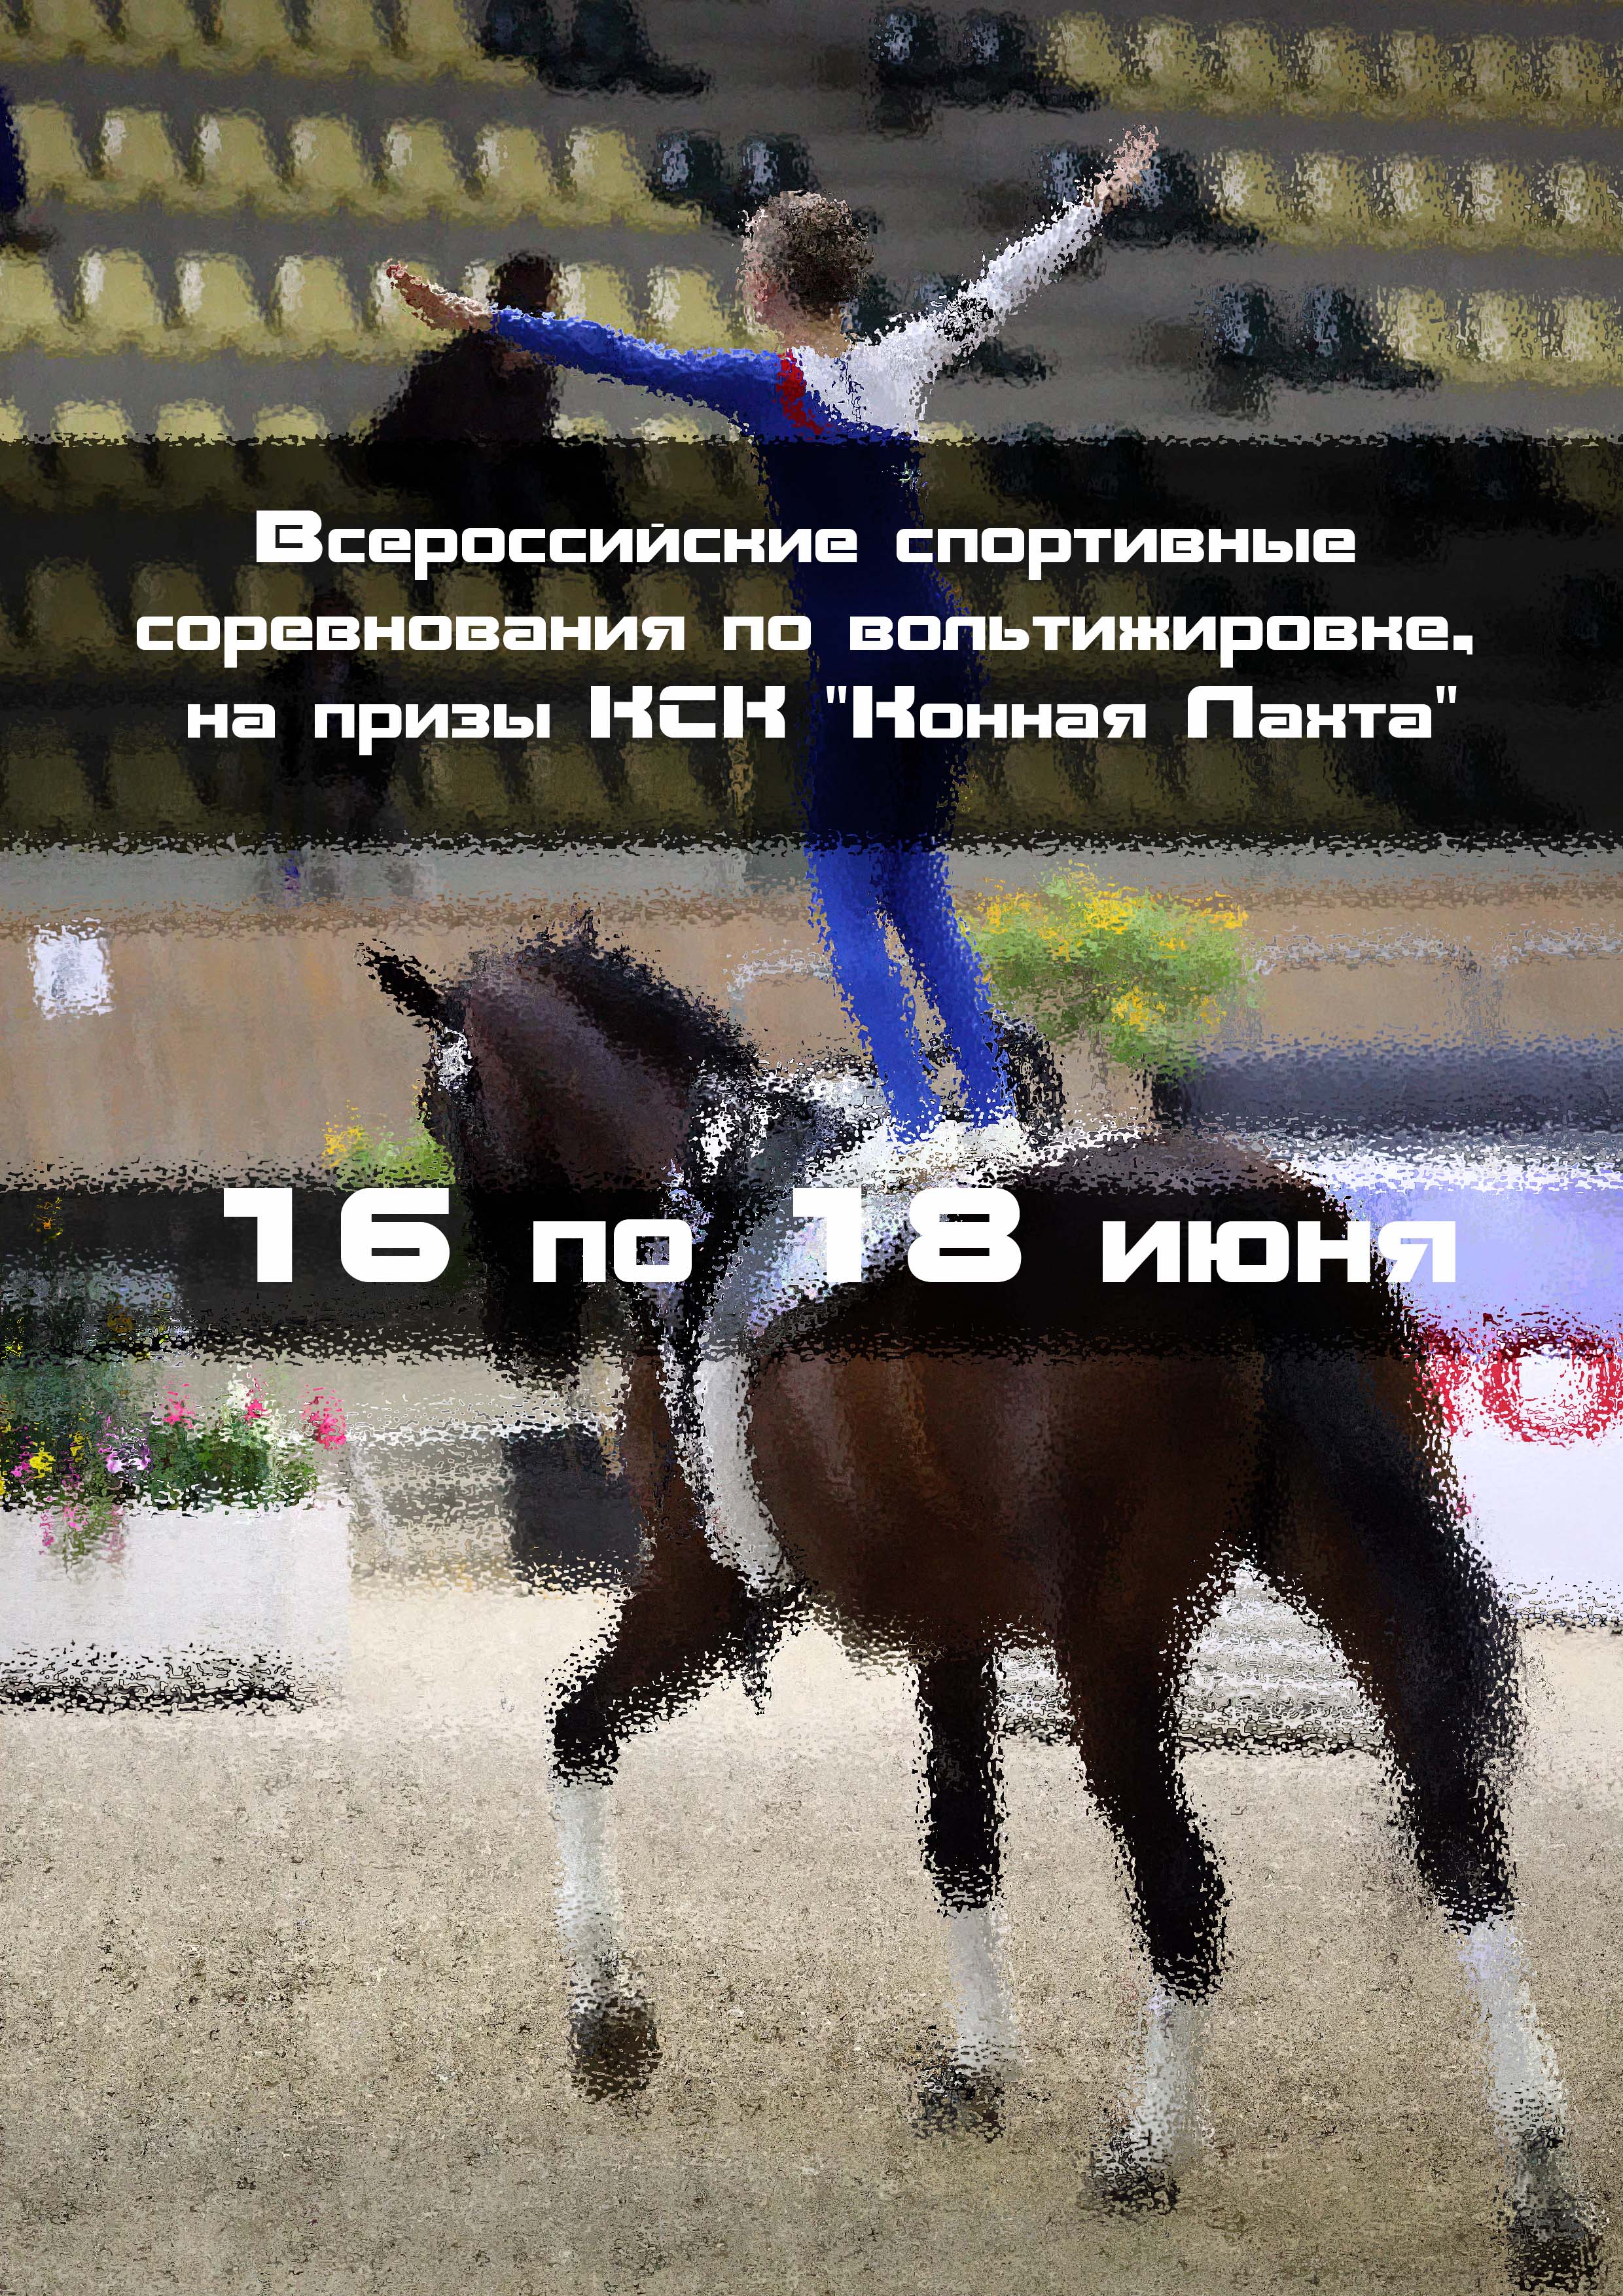 Всероссийские спортивные соревнования по вольтижировке, на призы КСК "Конная Лахта" 16  I juni
 2023  år
 